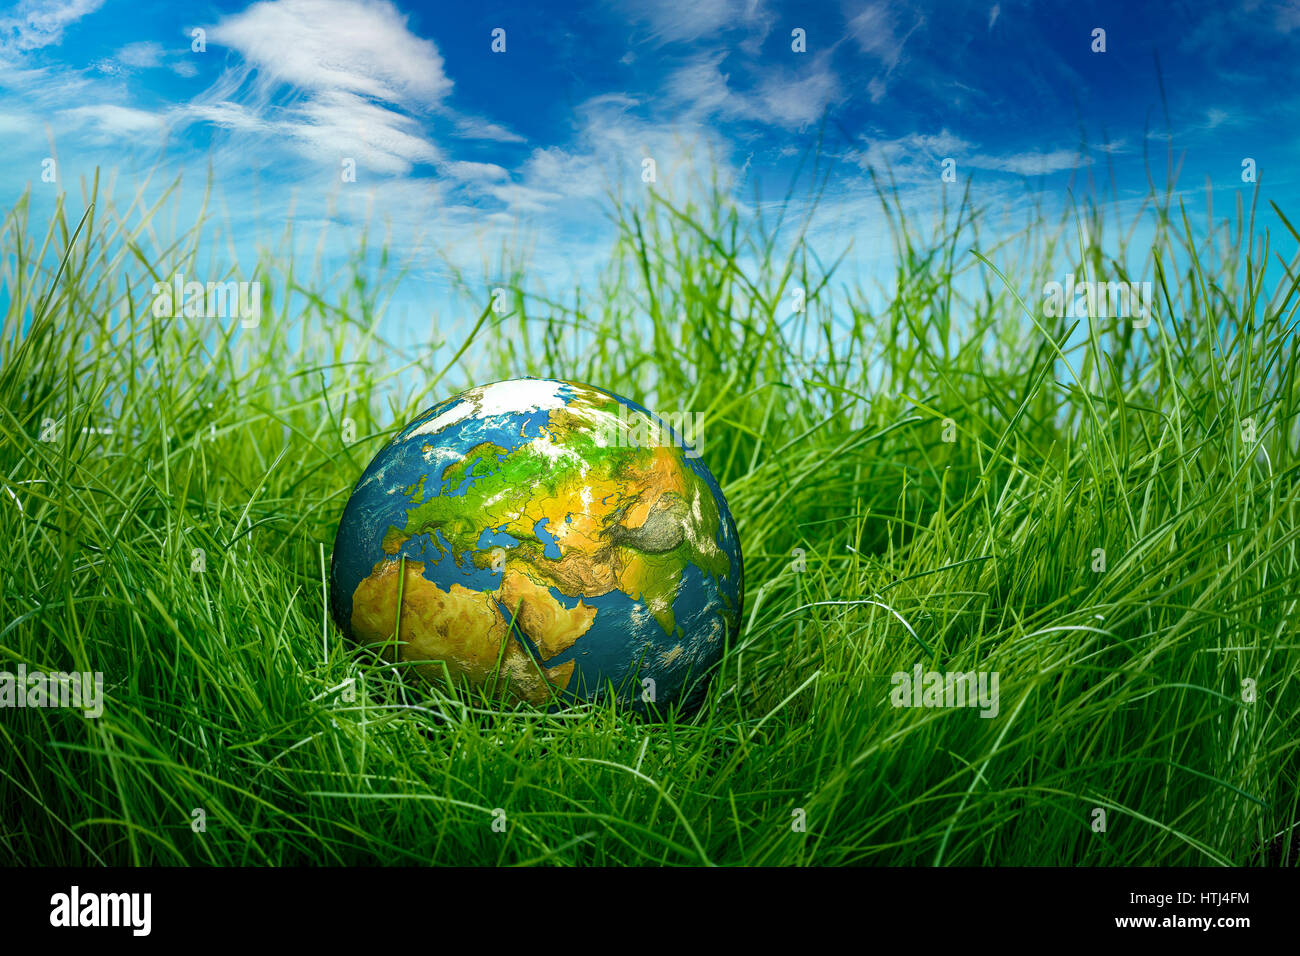 Globe se trouve sur l'herbe verte. Concept - Jour de la Terre. Banque D'Images